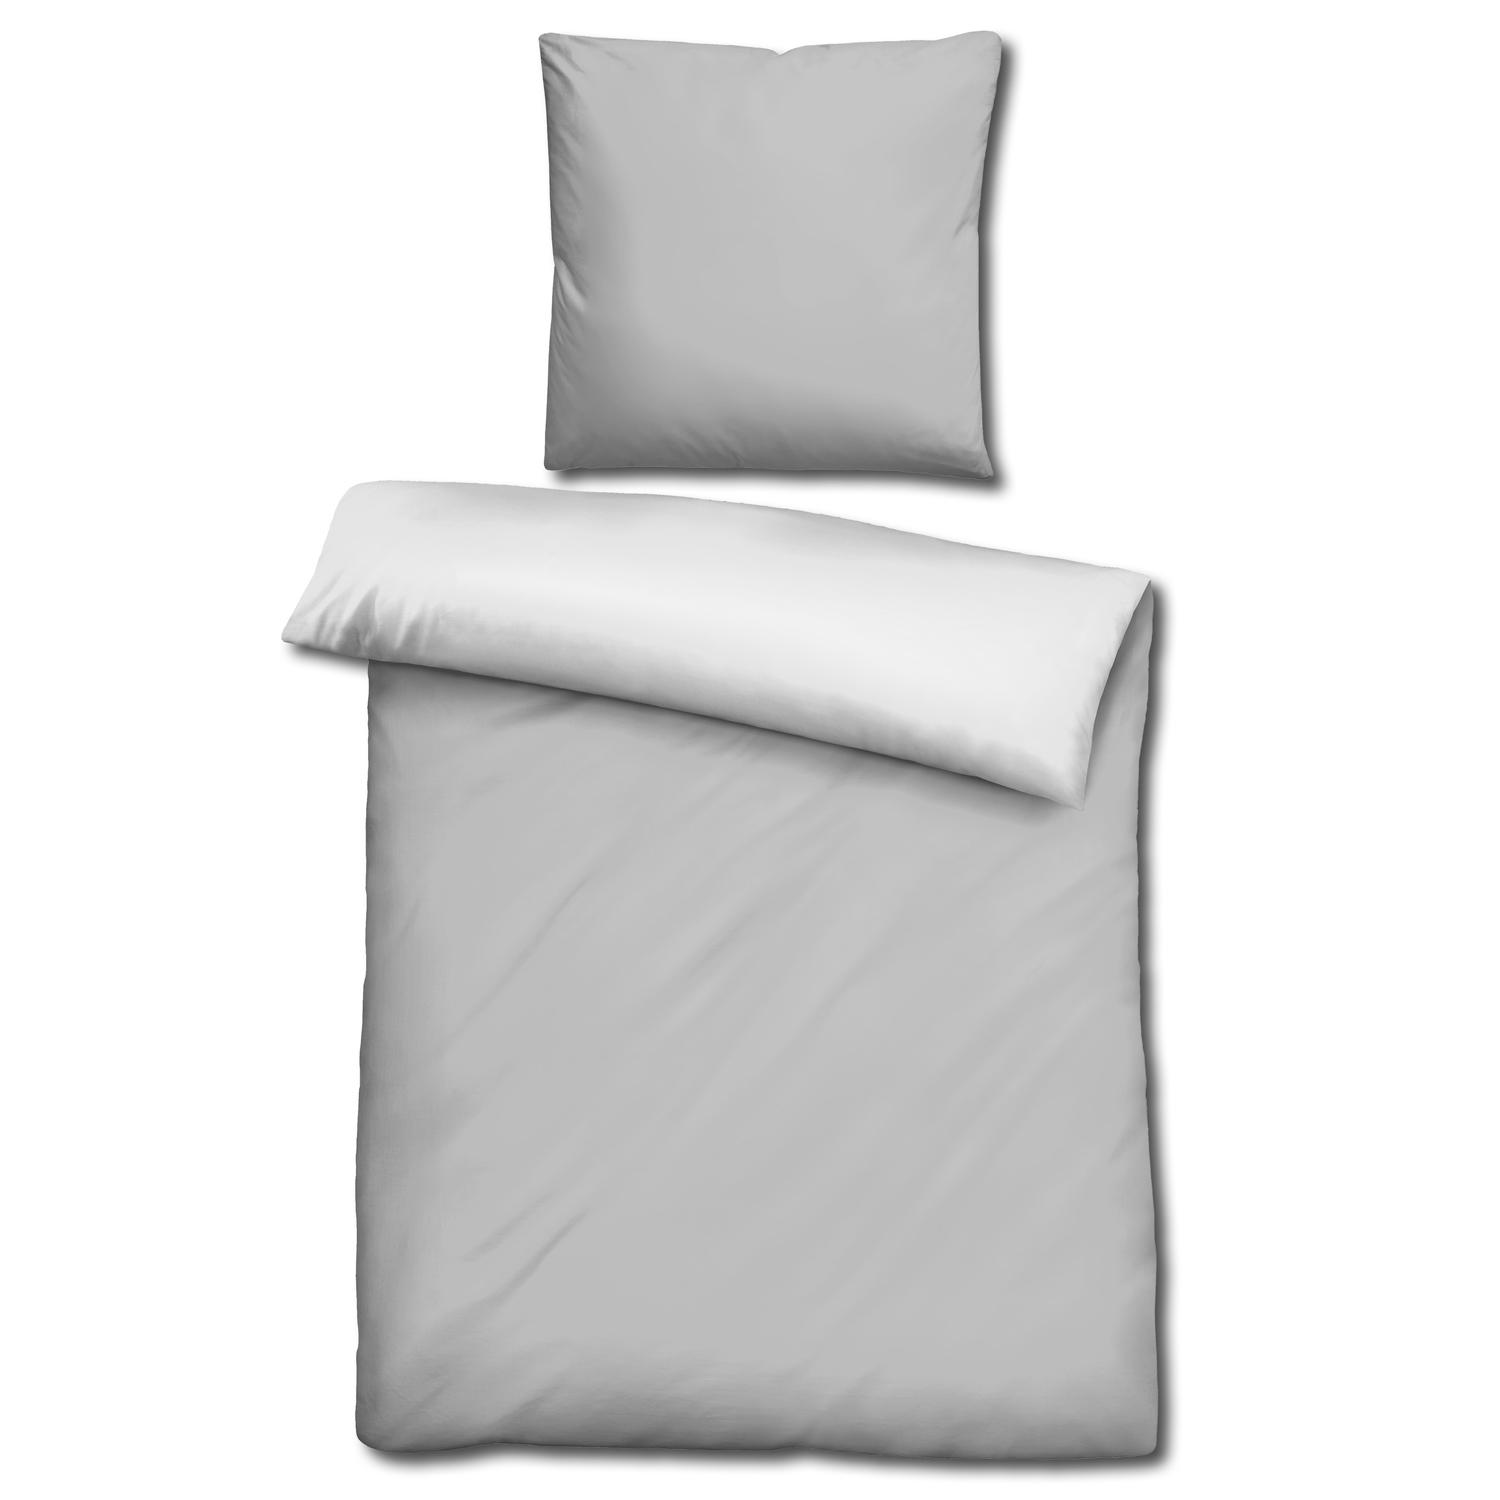 CloudComfort Basic oboustranné ložní prádlo světle šedá/bílá 155 x 220 + 80 x 80 cm